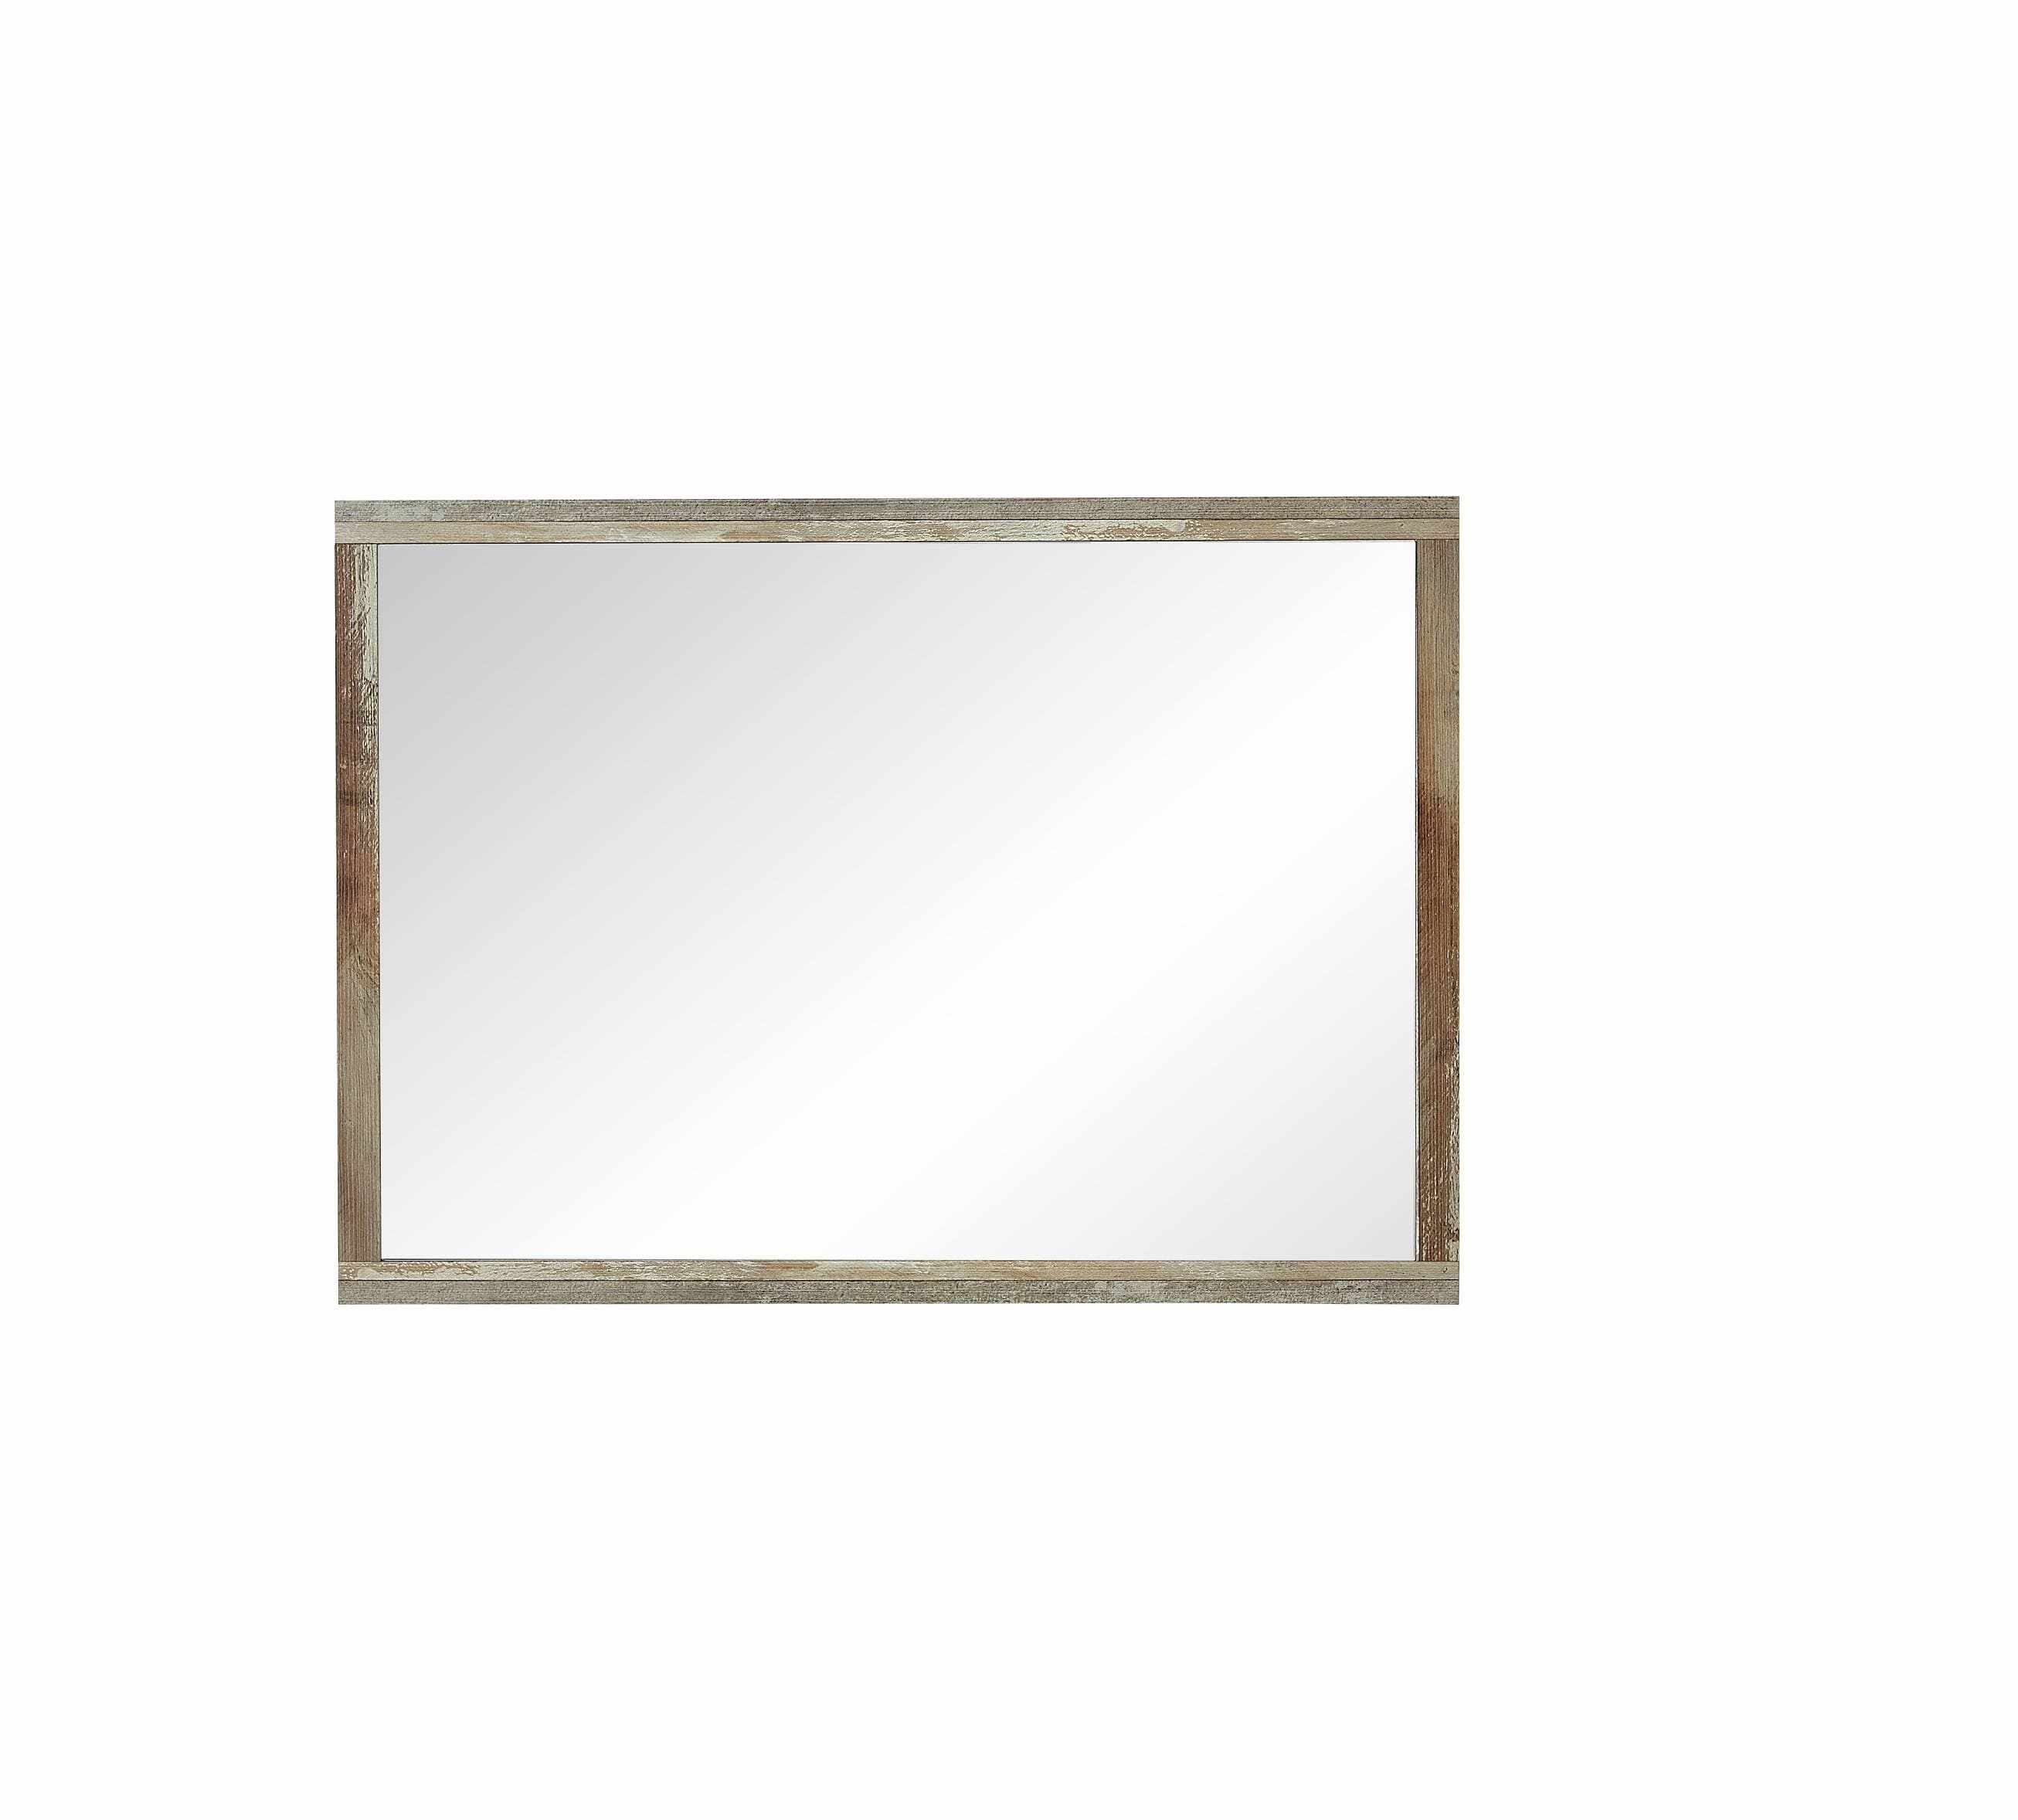 Oglinda decorativa cu rama din pal Bazna Natur / Gri inchis, l97xH70 cm